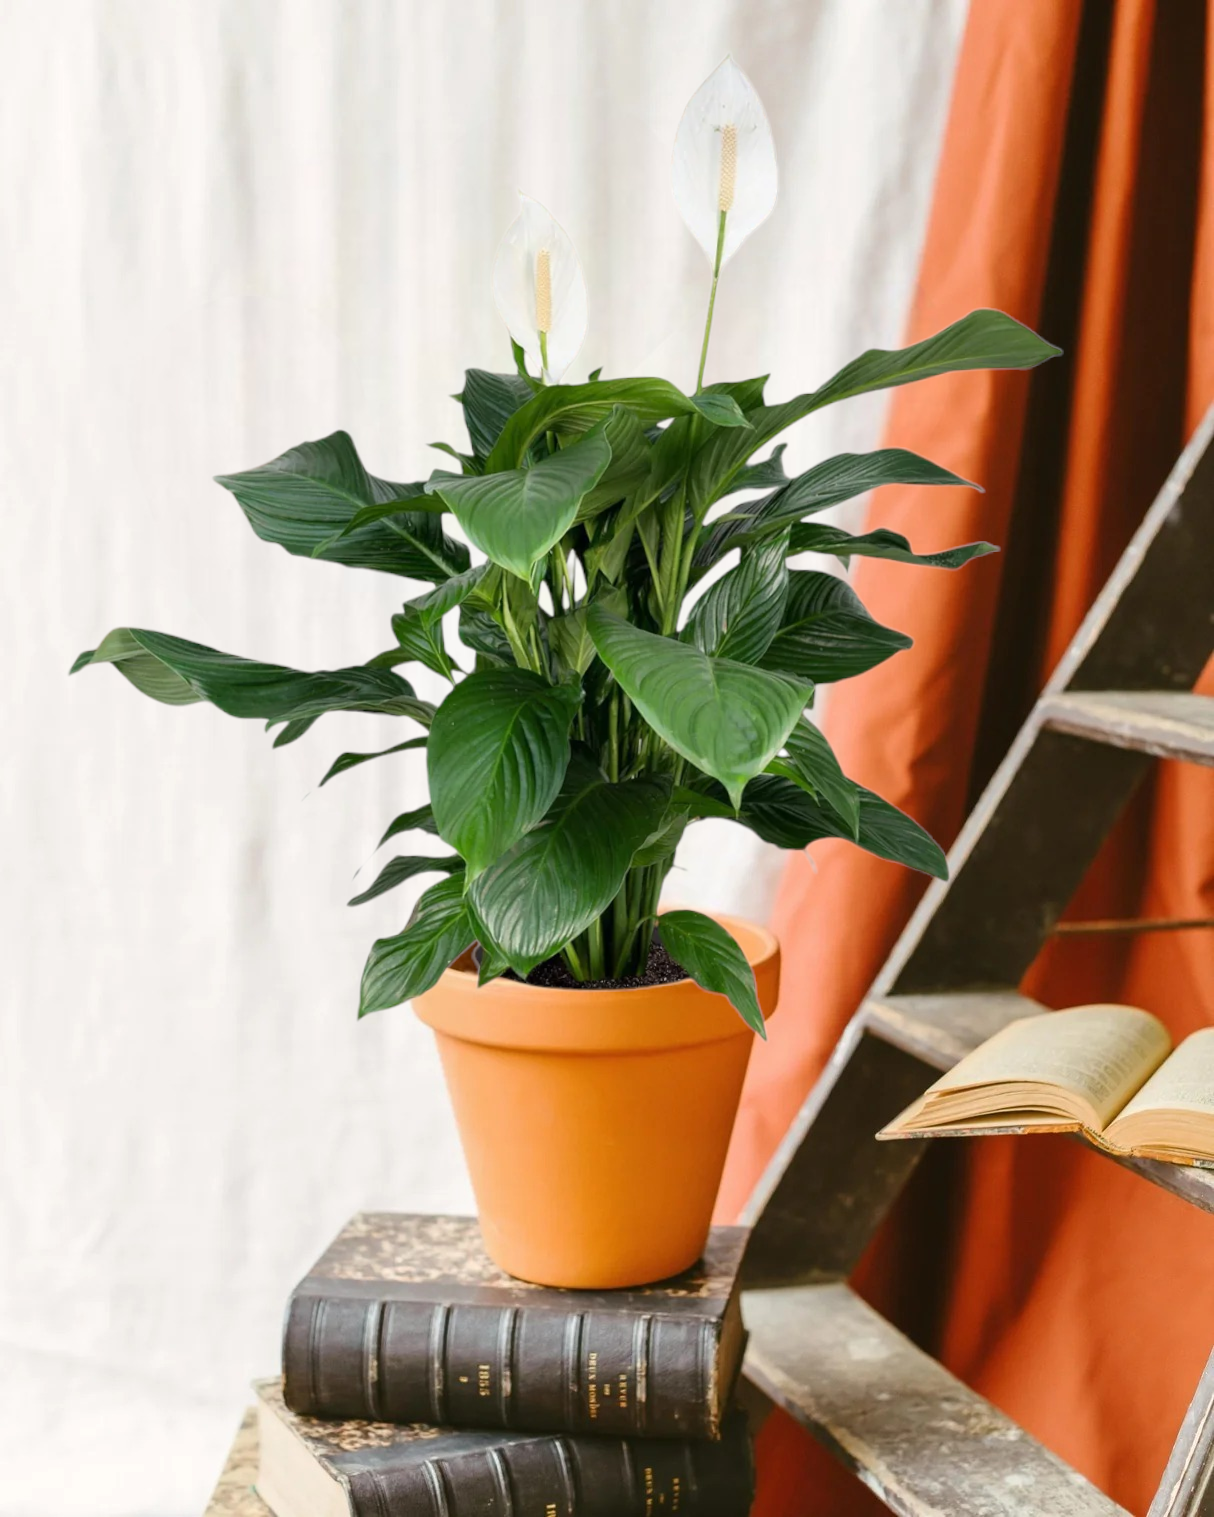 Plant in a box - kentia palmier xxl - howea forsteriana - plante verte interieur  vivante - purifiante - pot 24cm - hauteur 150-170cm